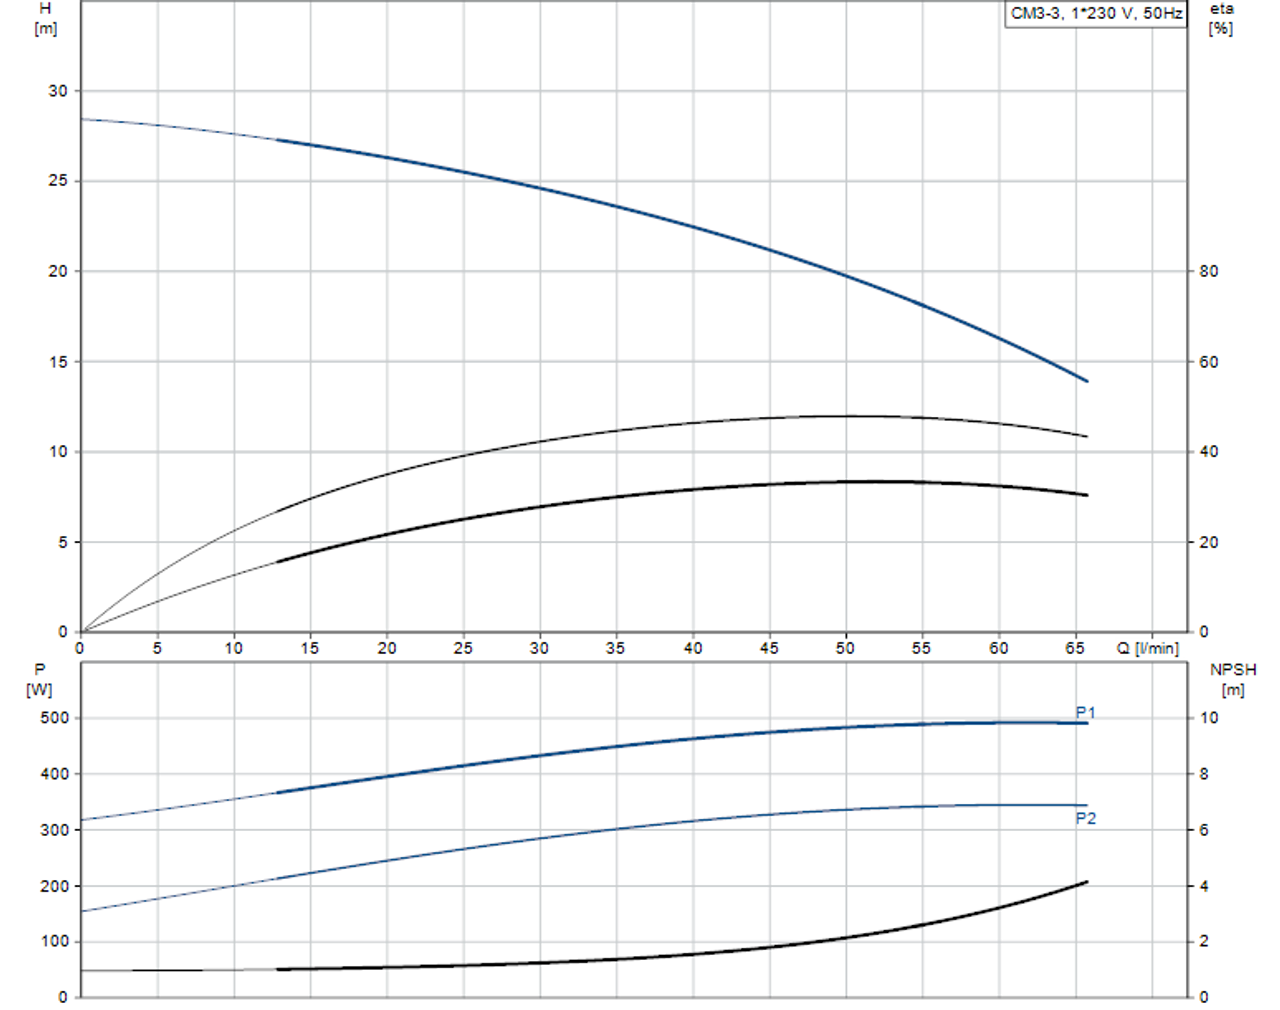 CM-SP Performance Curve